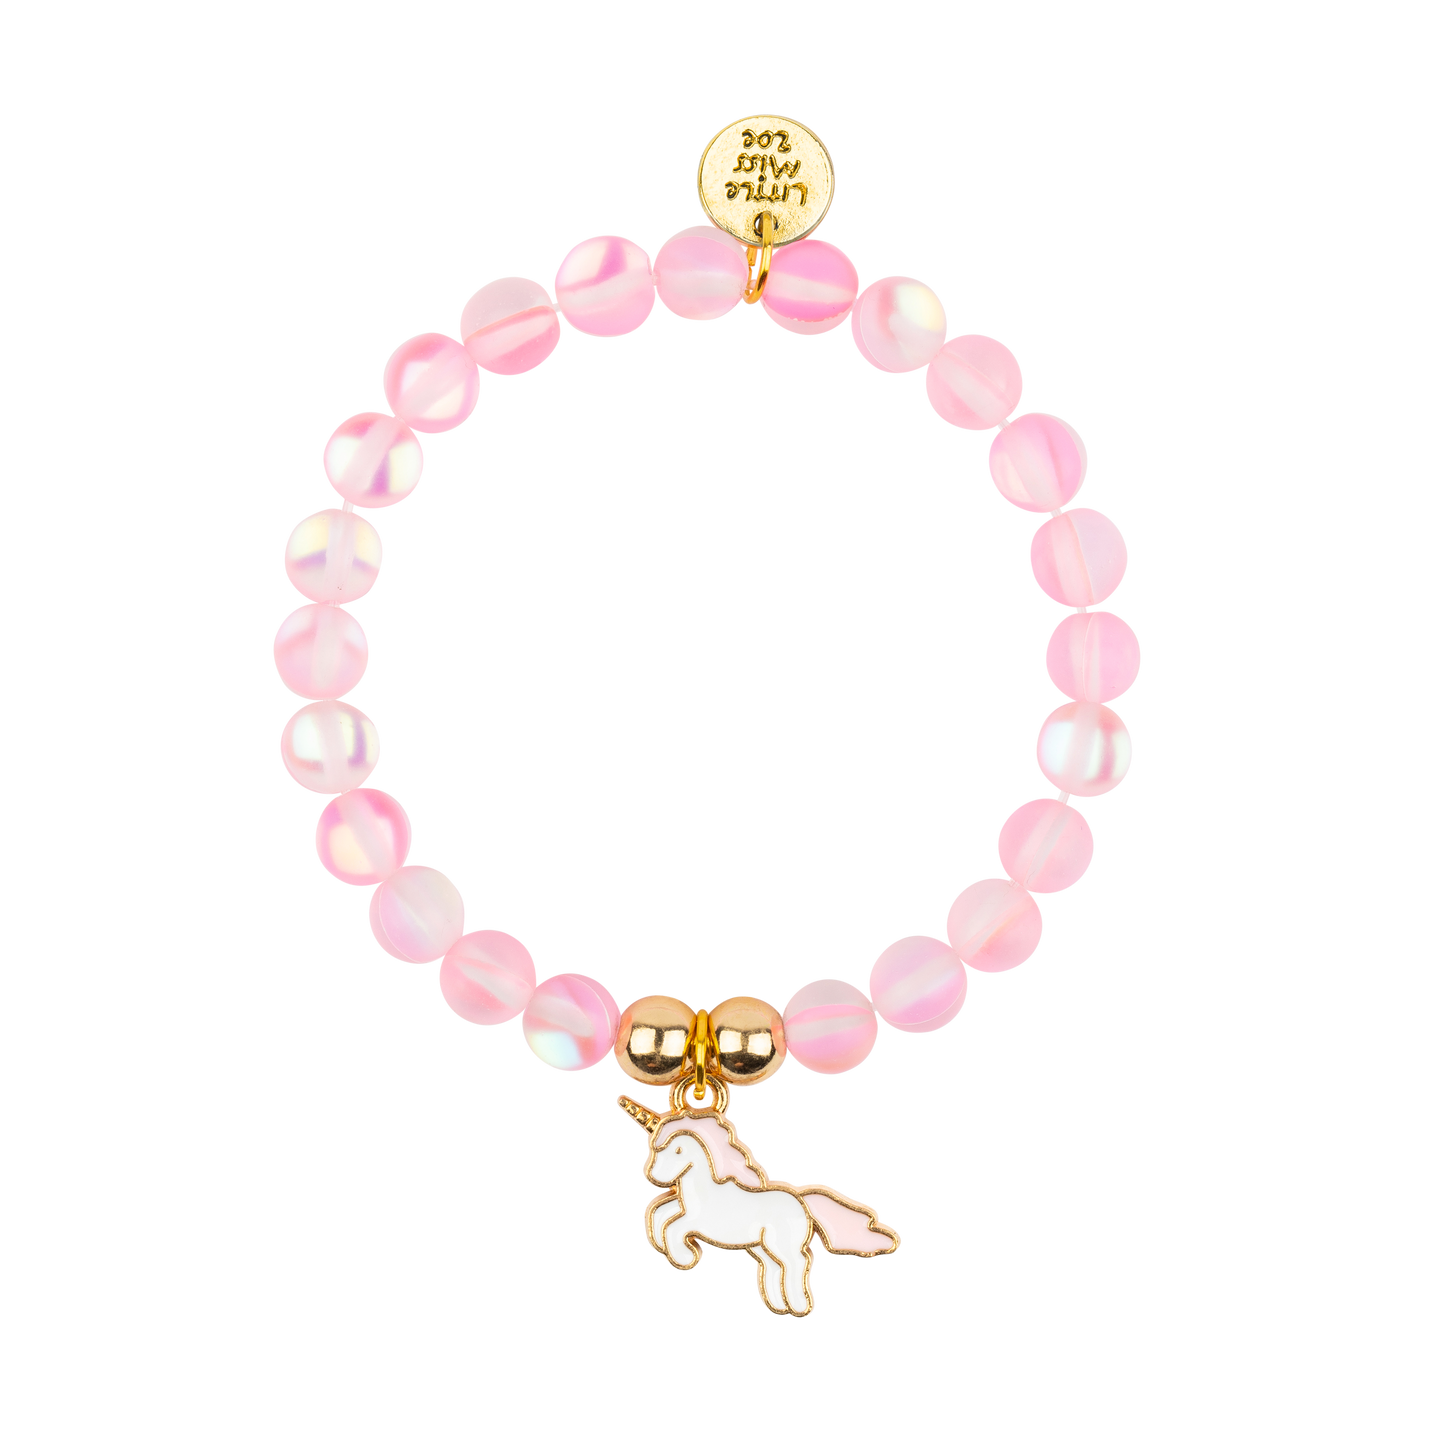 Pink Confetti Bracelet with Unicorn Enamel Charm – Little Miss Zoe